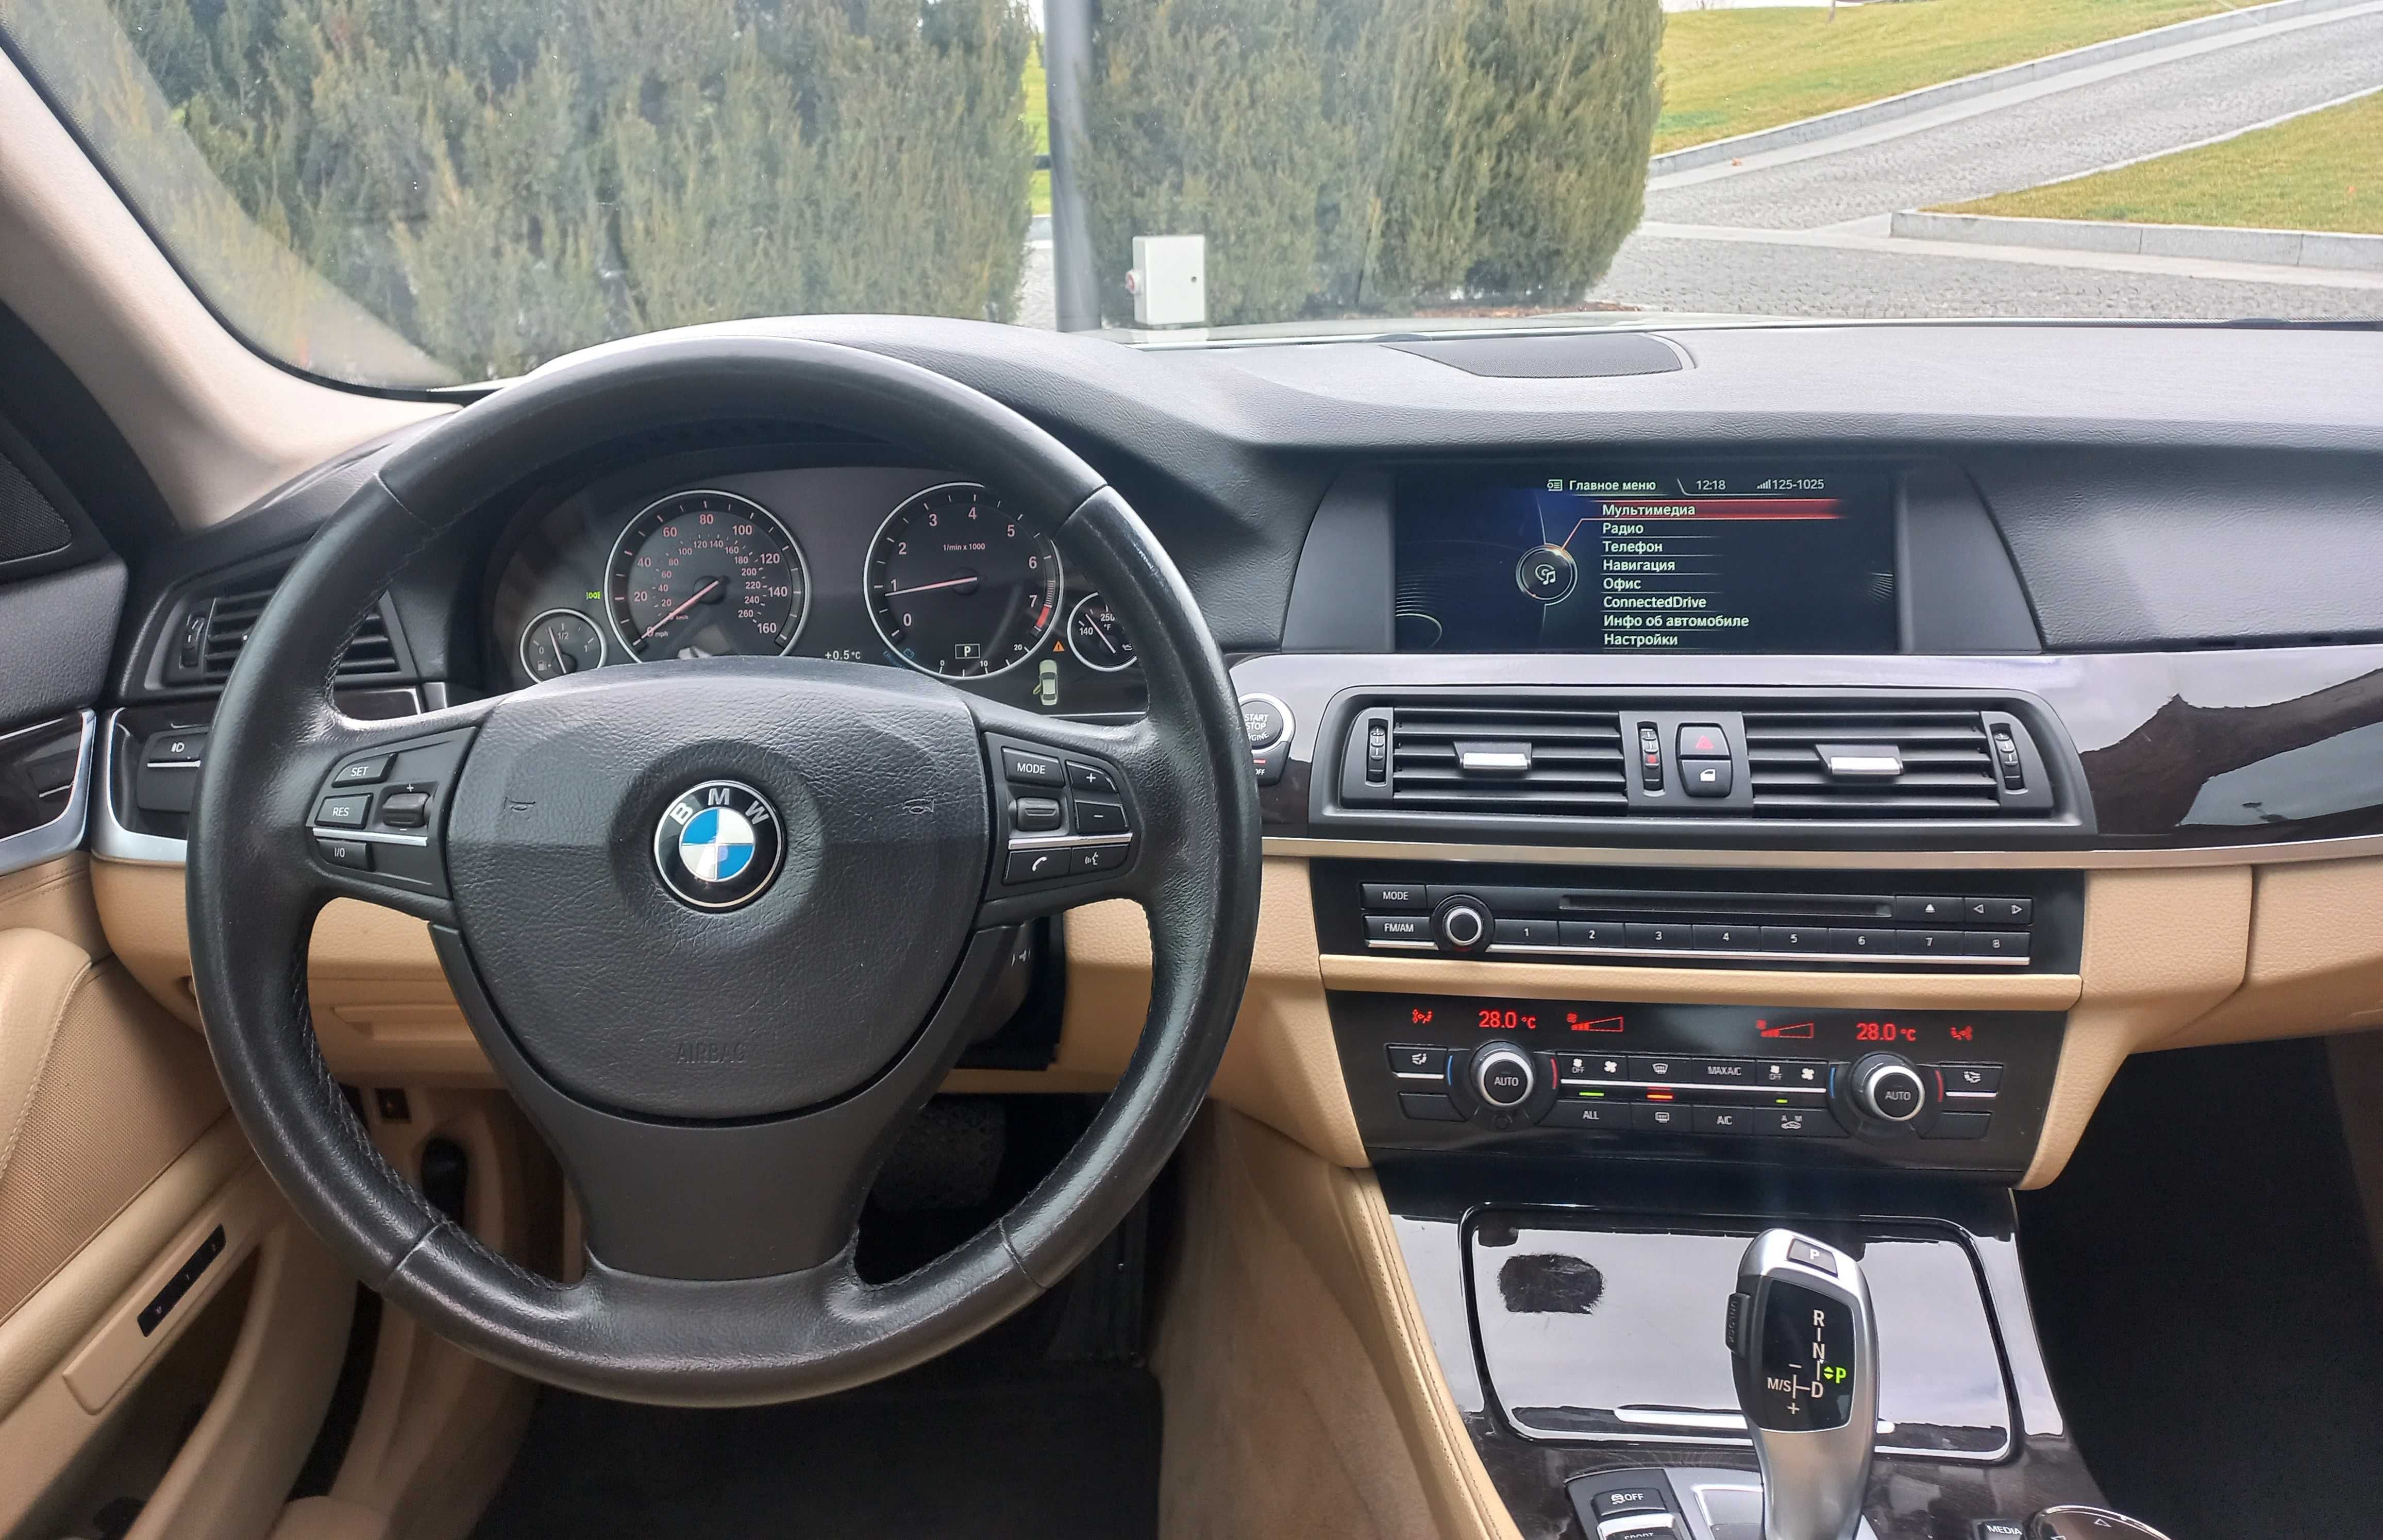 Продам BMW 520i в отличном состоянии.